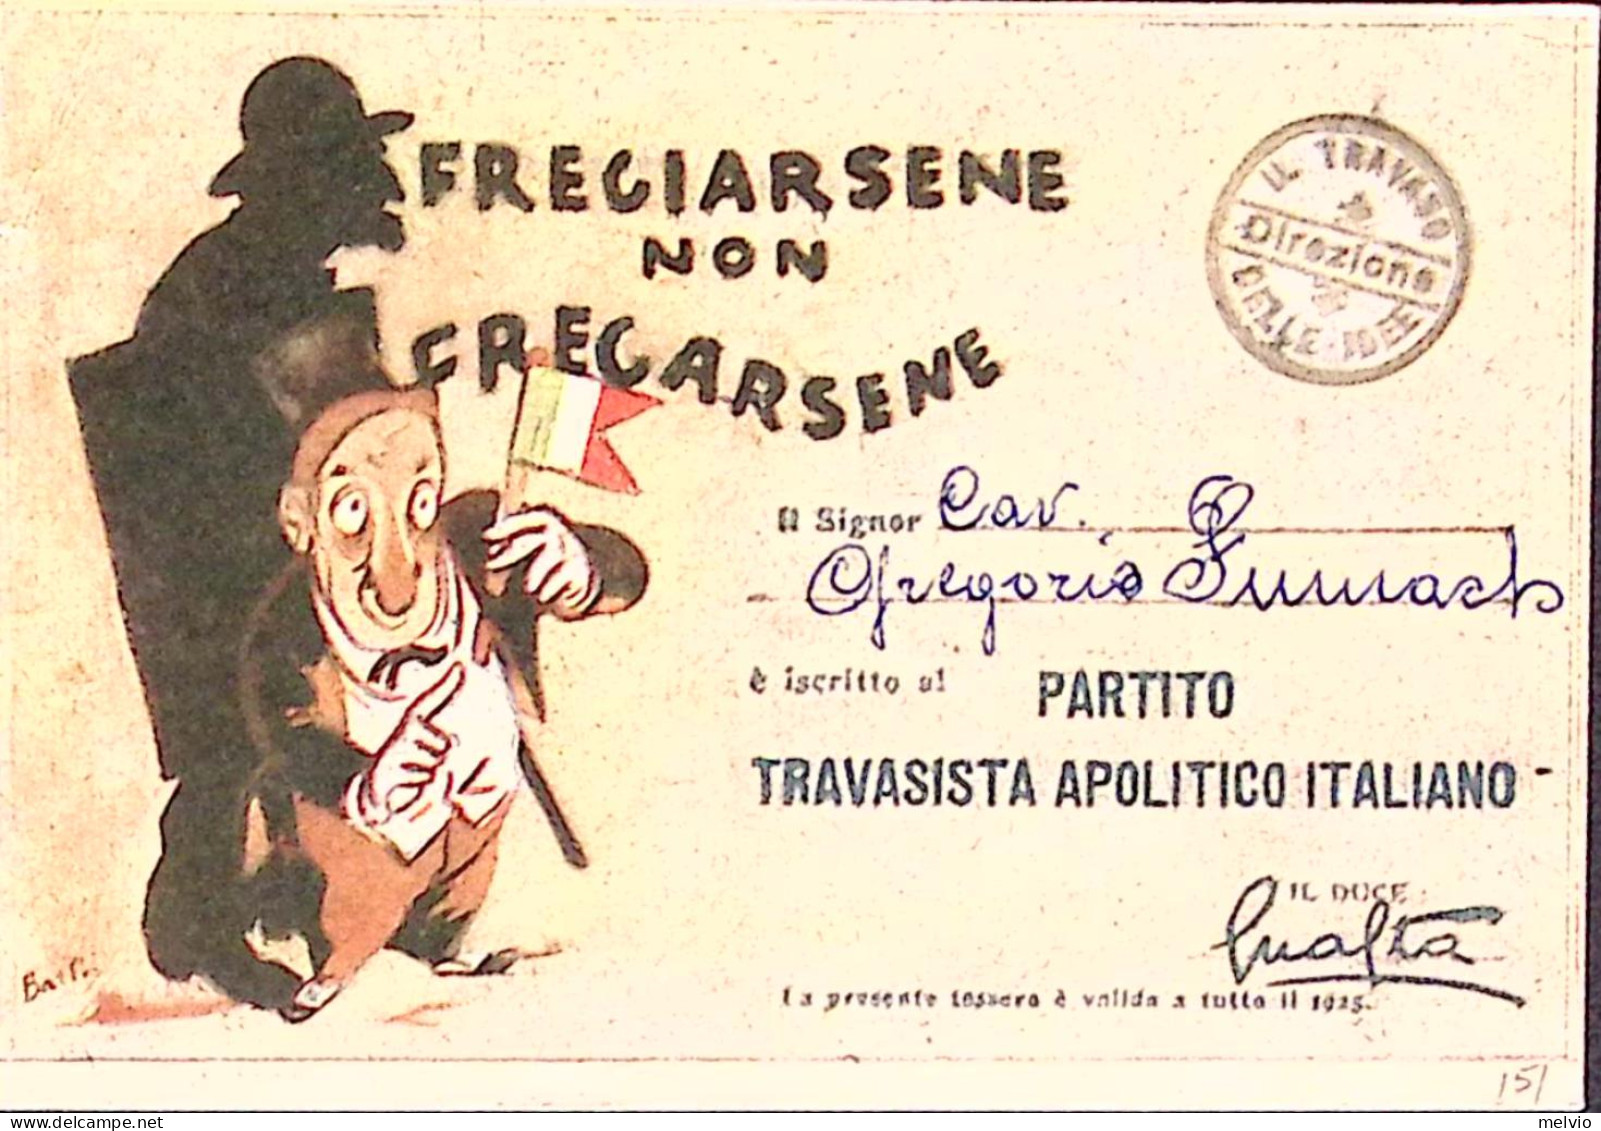 1925-FREGIARSENE NON FREGARSENE Cartolina Edizioni IL TRAVASO - Patriotic